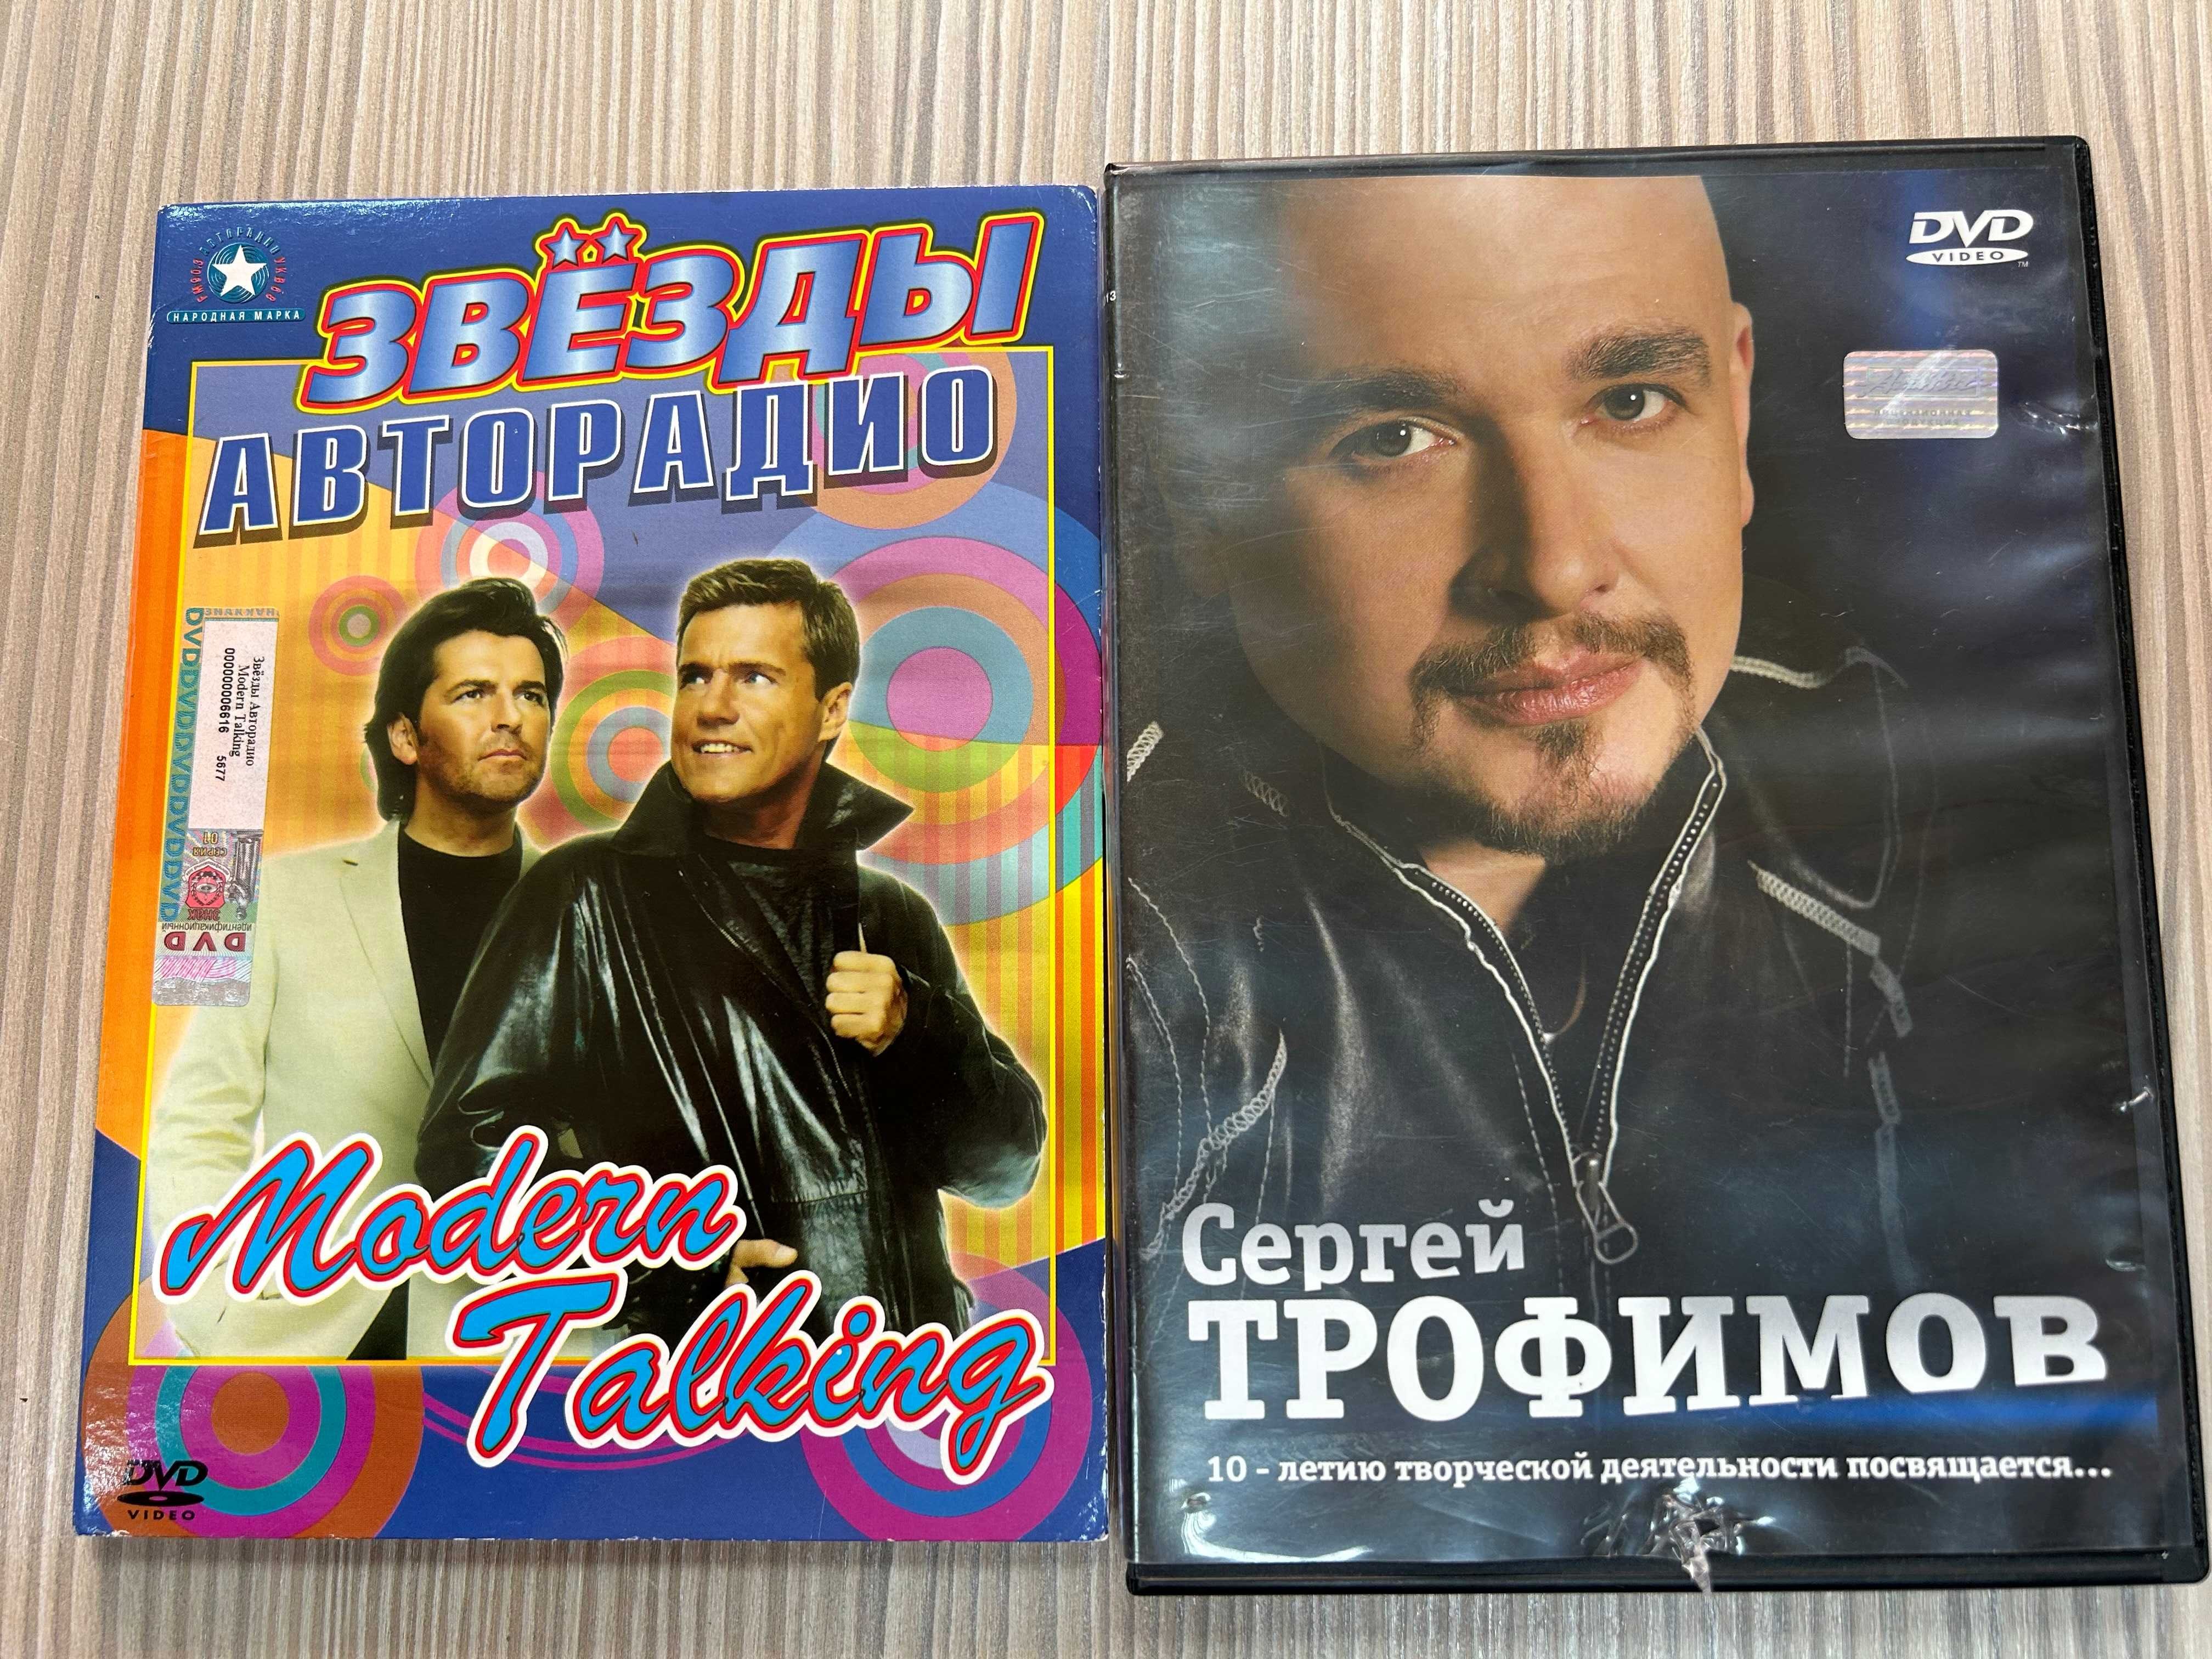 DVD диски, видеоклипы: Modern Talking, Сергей Трофимов, хит-клипы 80 г